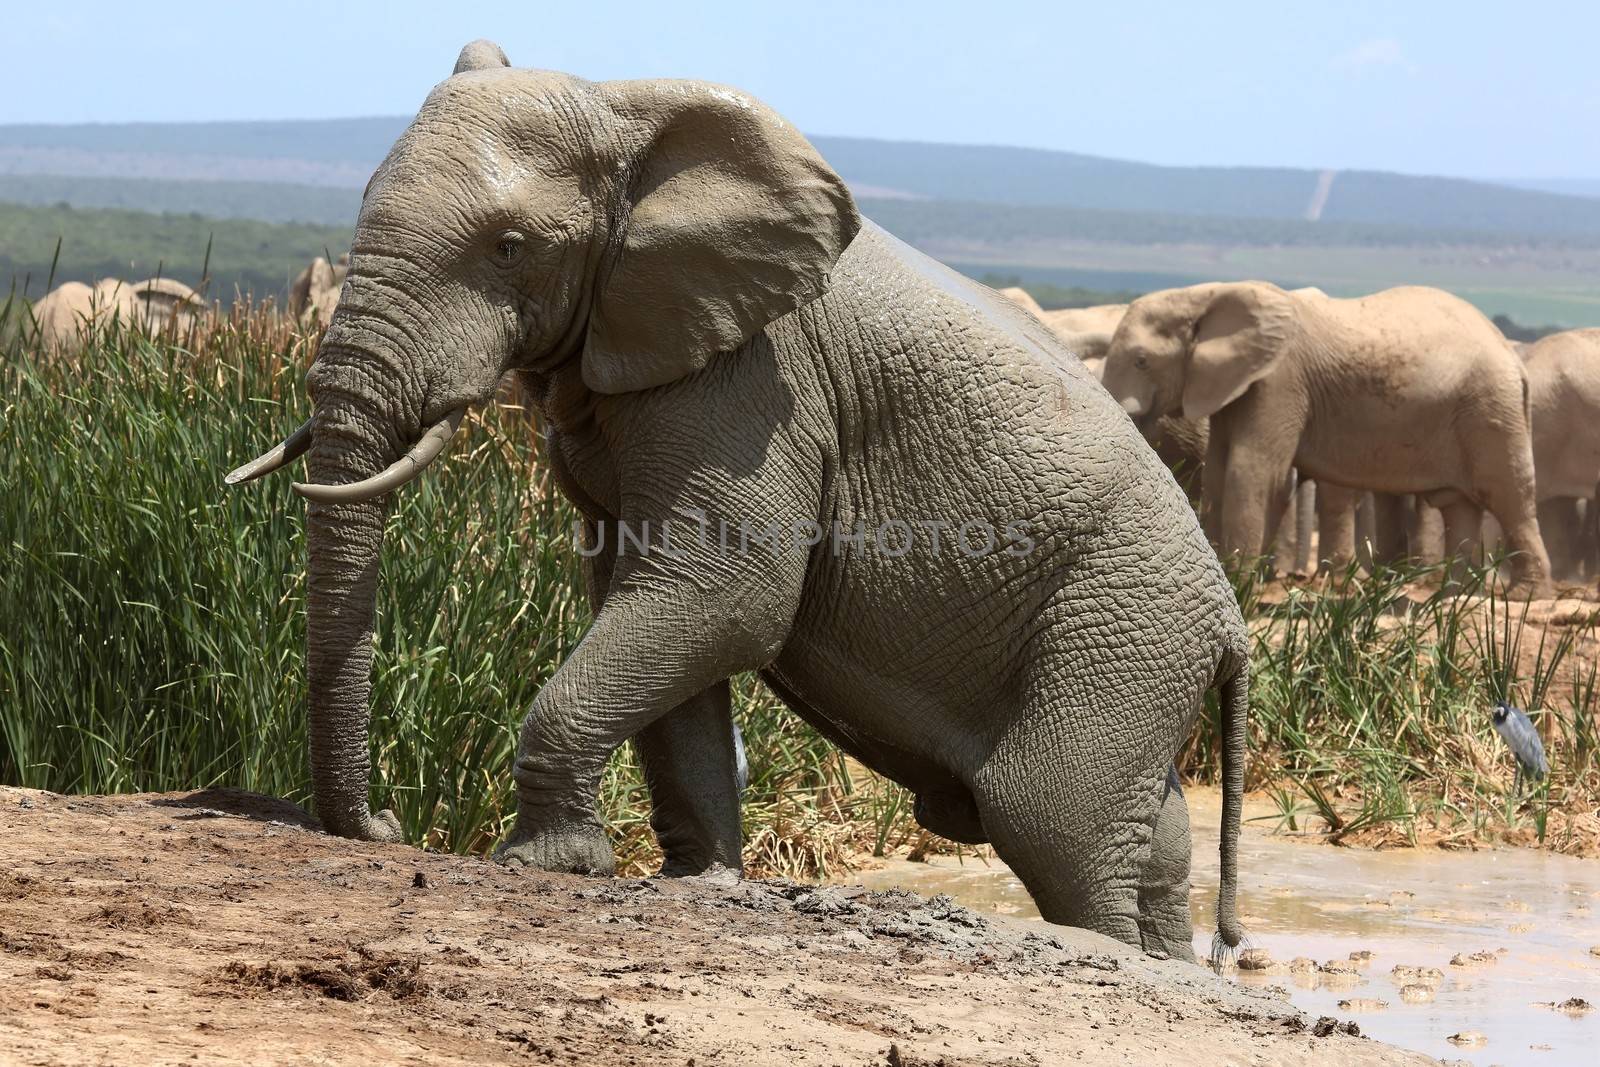 Elephant Climbing out of Mud Bath by fouroaks